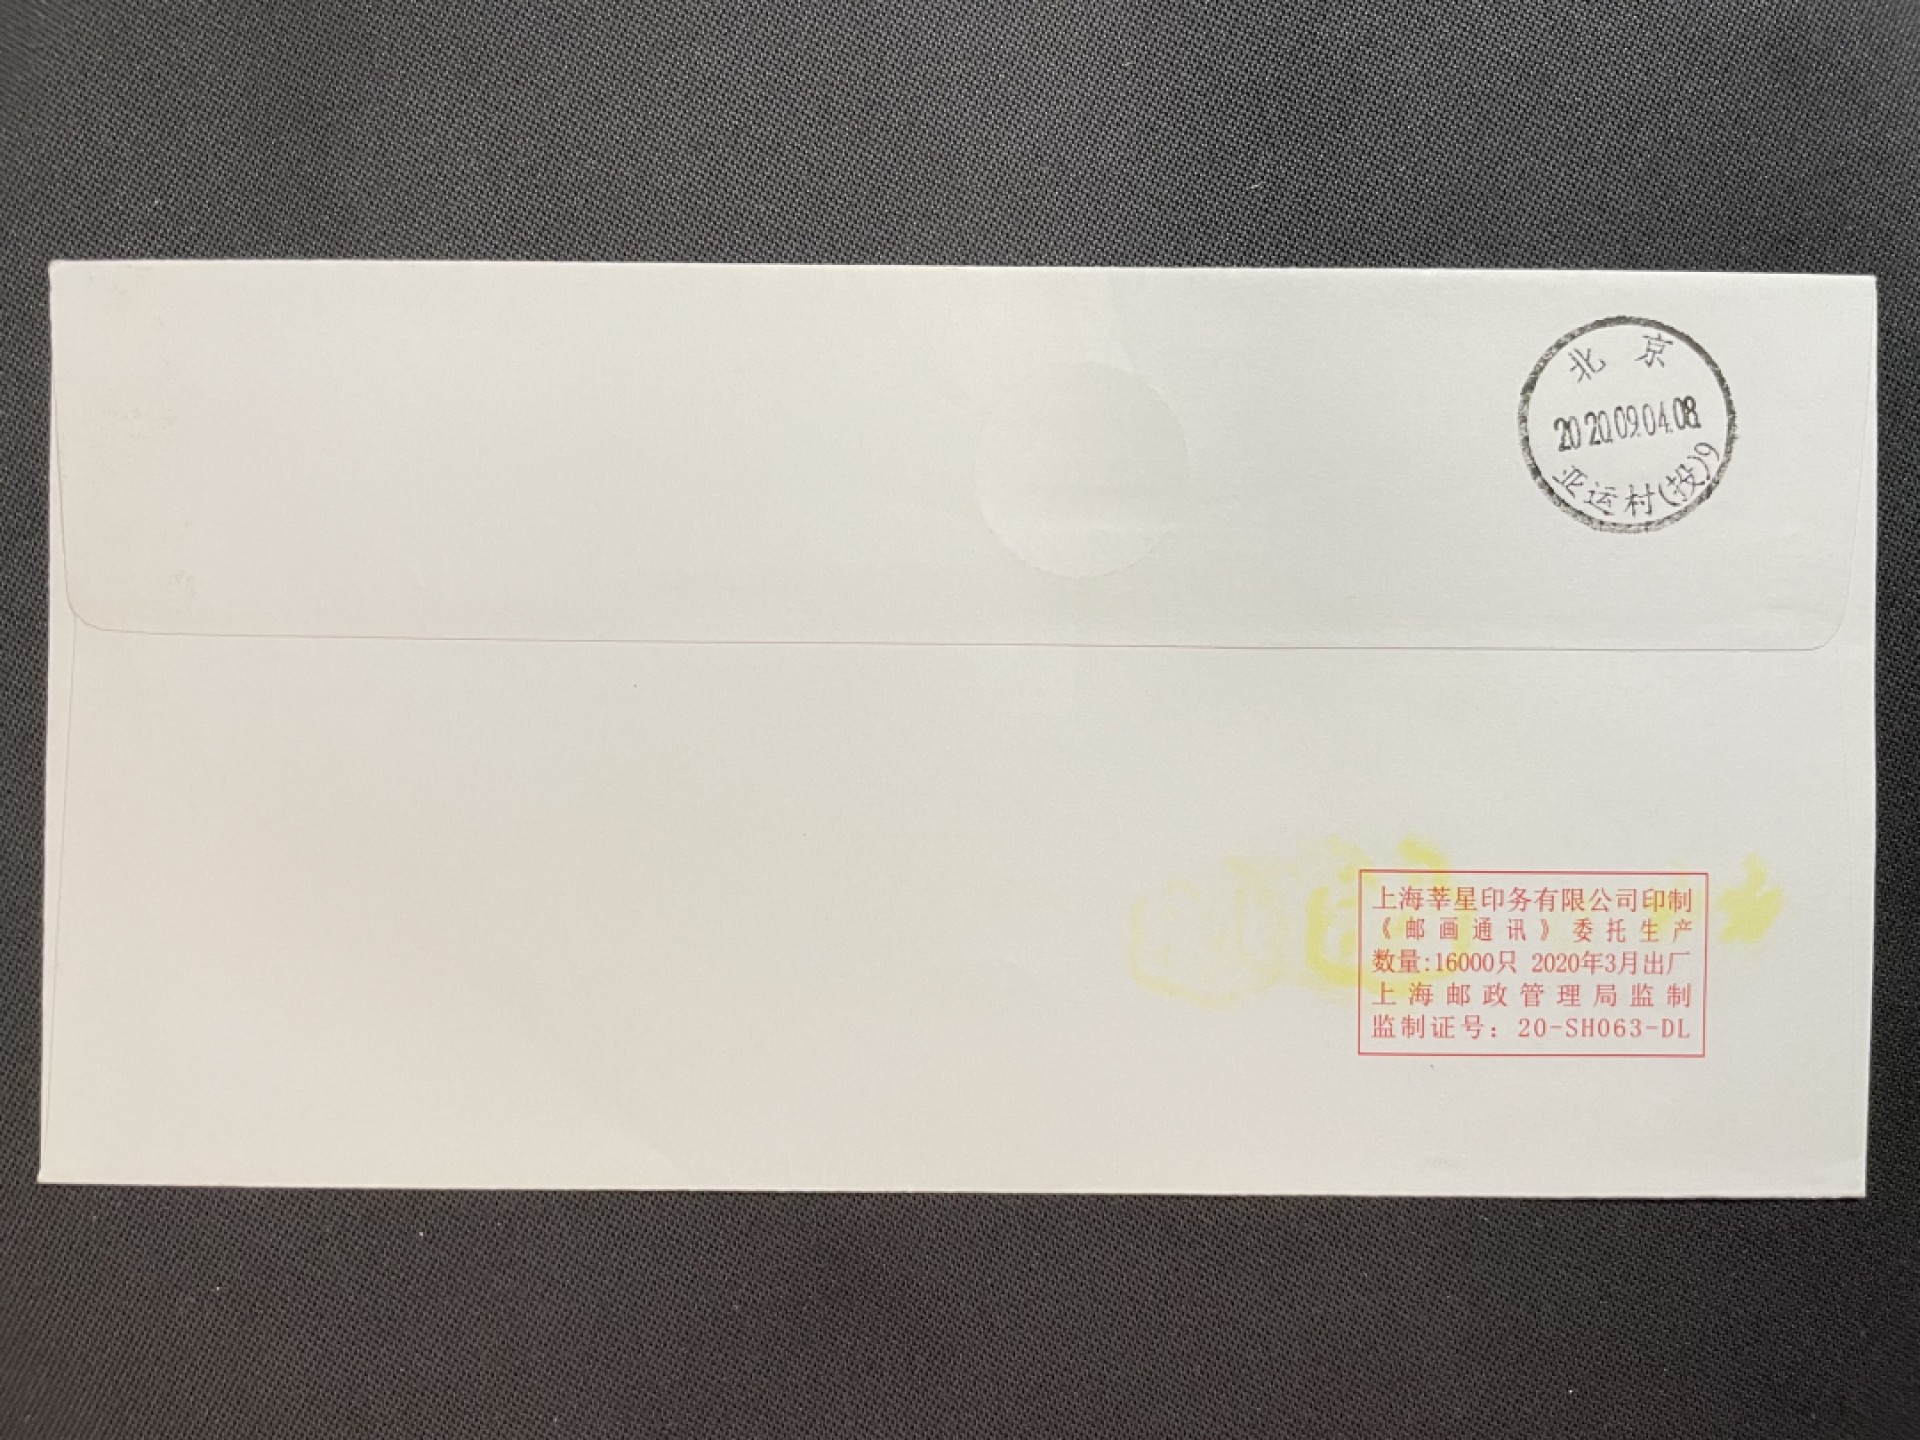 【首日封】牛年开机邮资机宣传戳 北京邮票厂 牛街 首日实寄